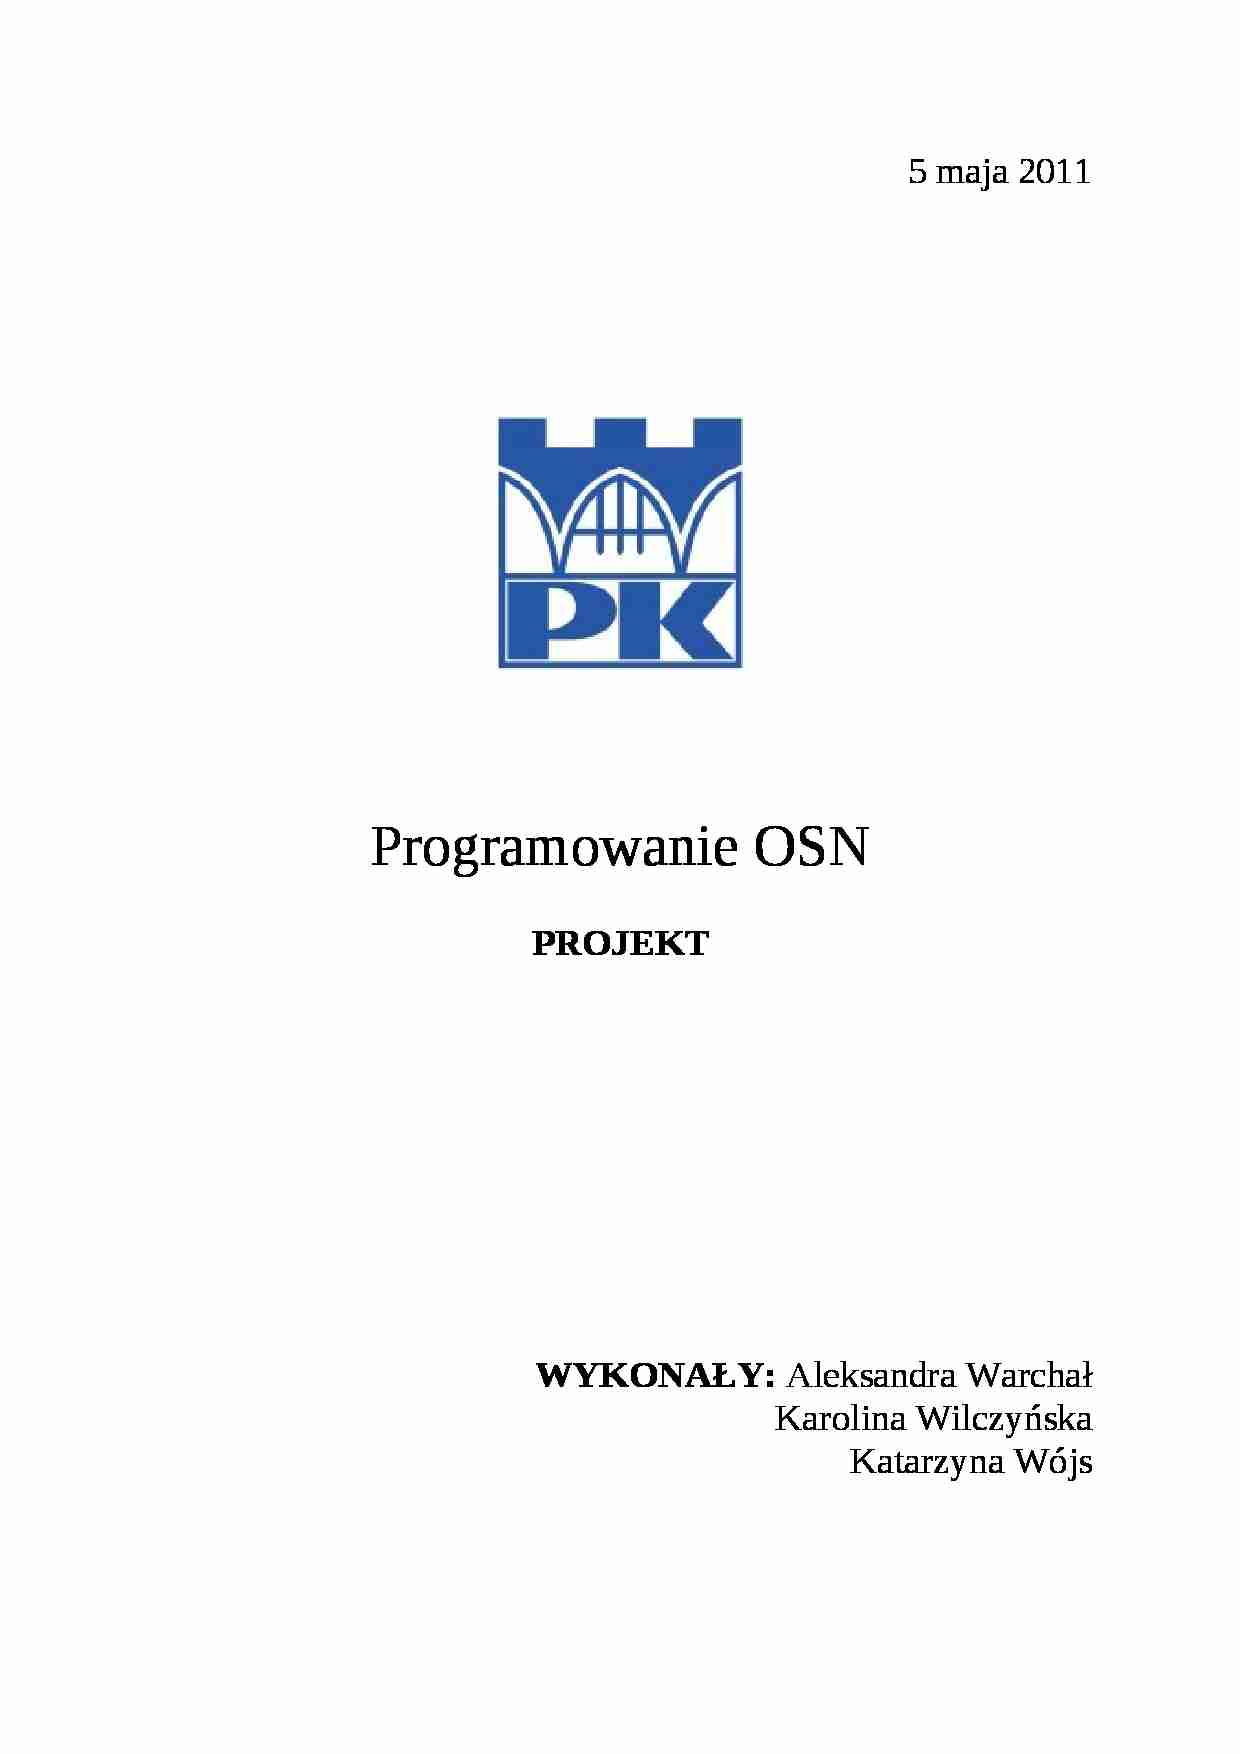 programowanie OSN - projekt - strona 1